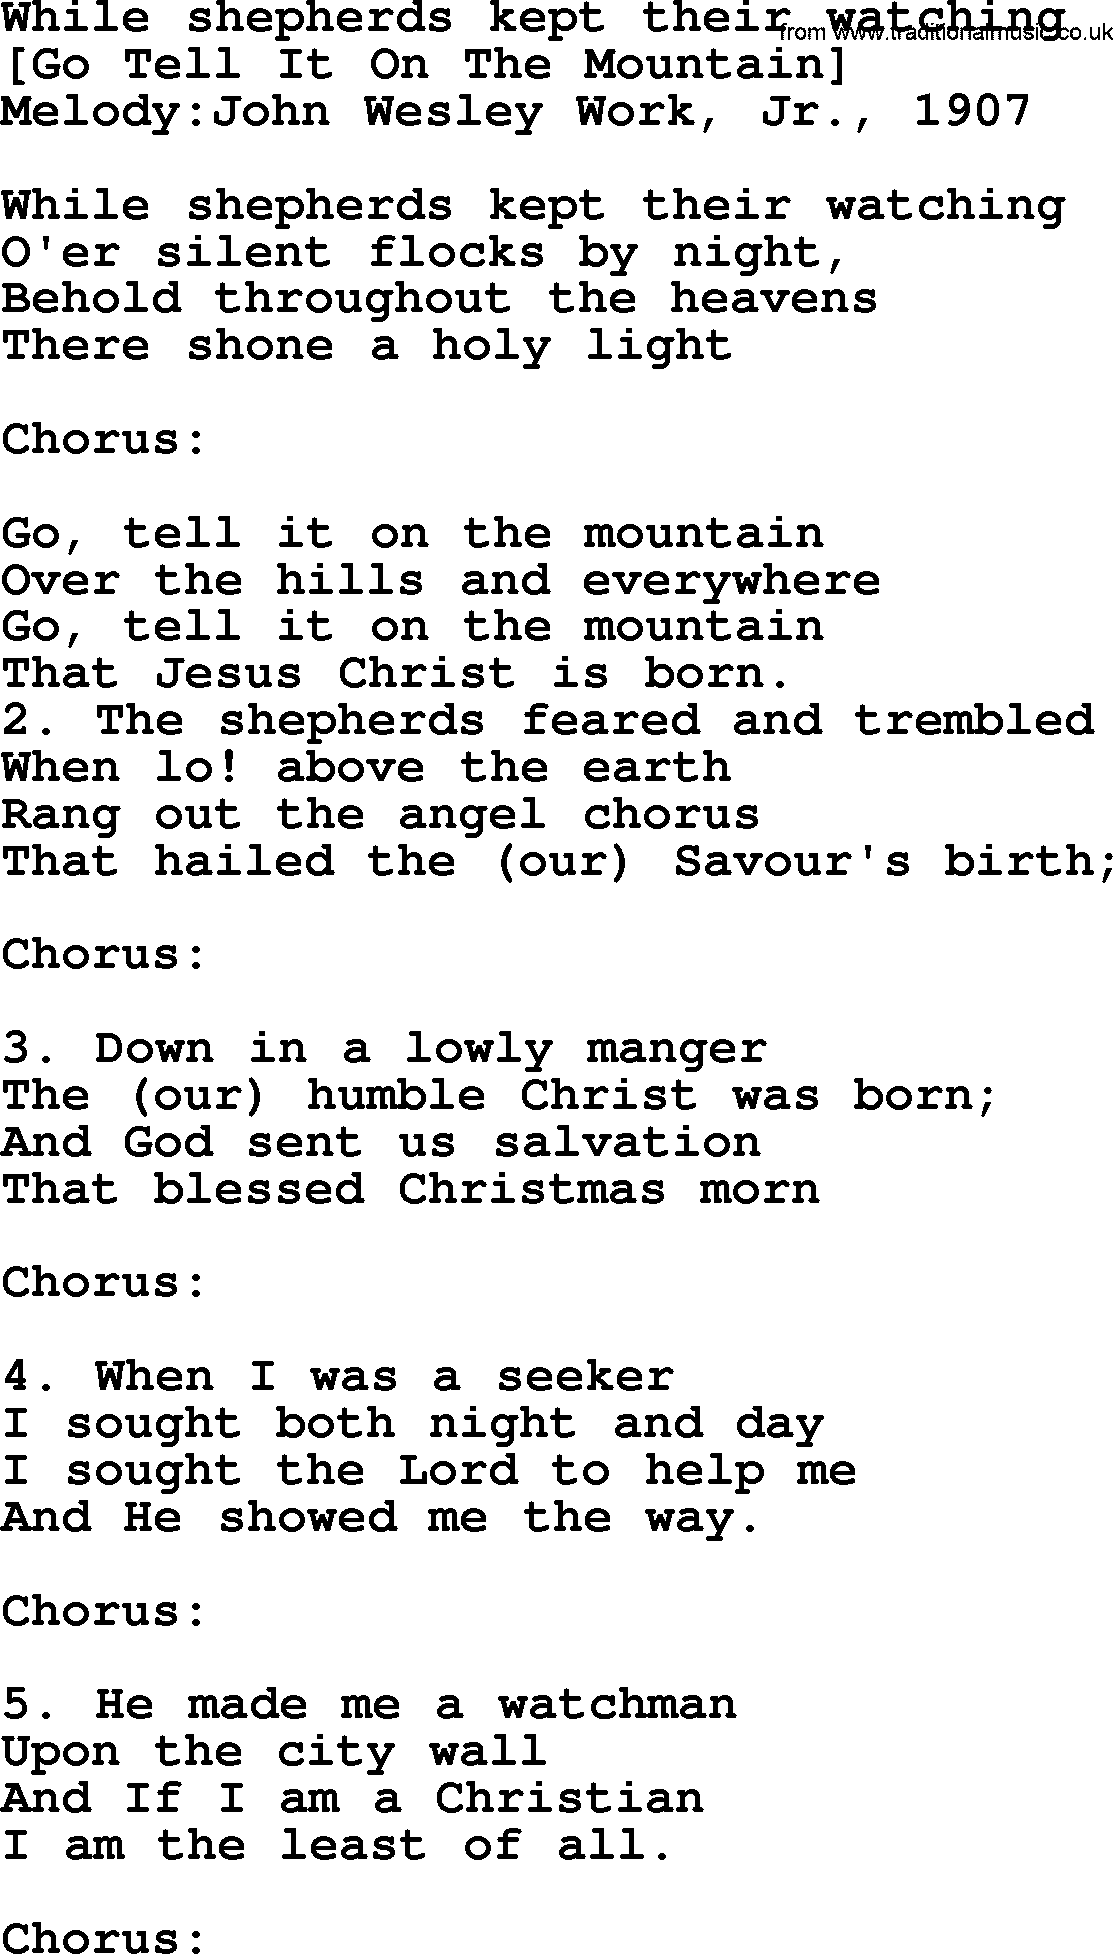 Old American Song: While Shepherds Kept Their Watching, lyrics